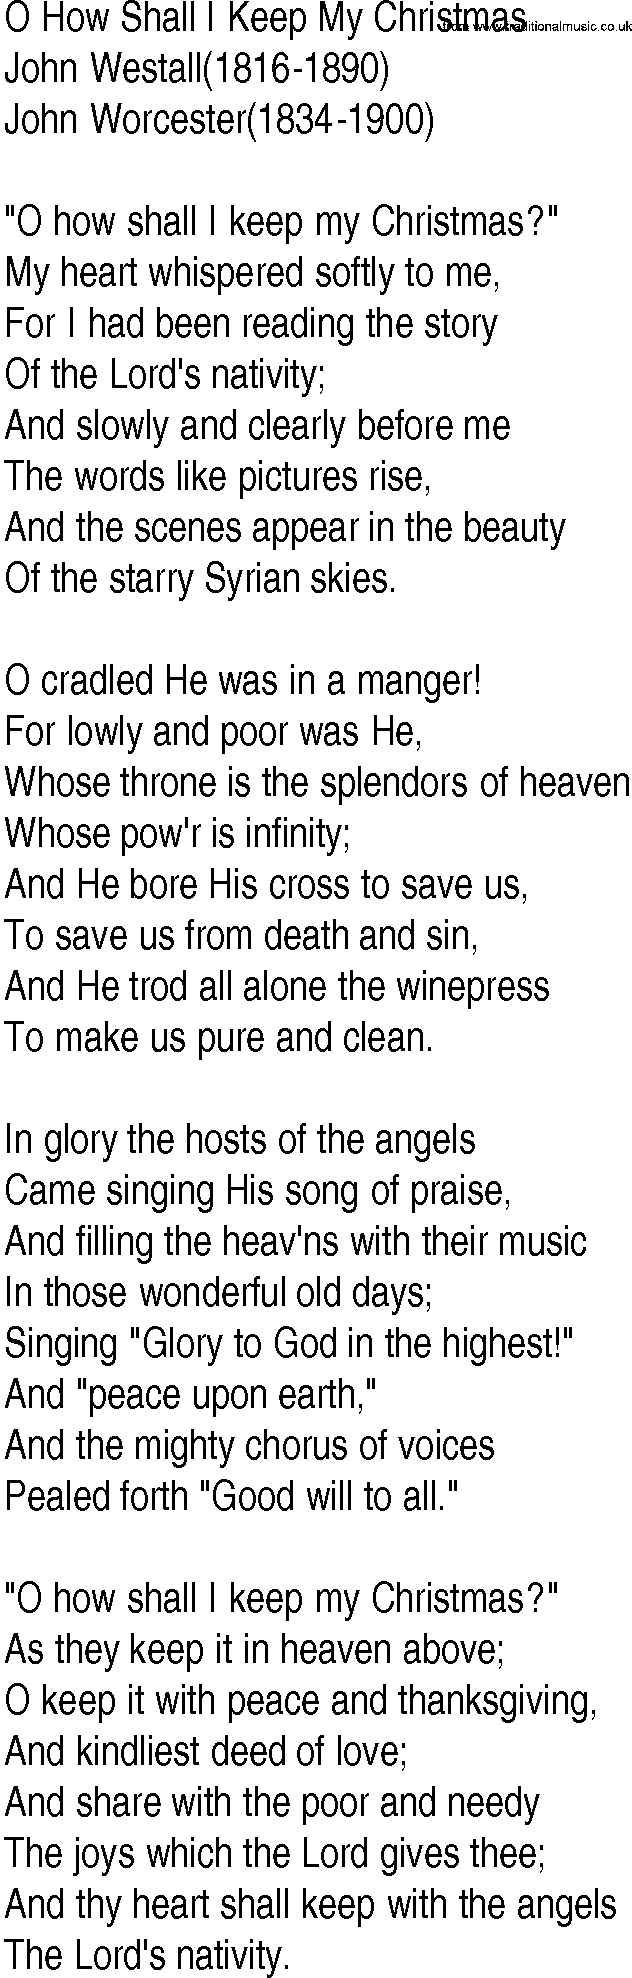 Hymn and Gospel Song: O How Shall I Keep My Christmas by John Westall lyrics